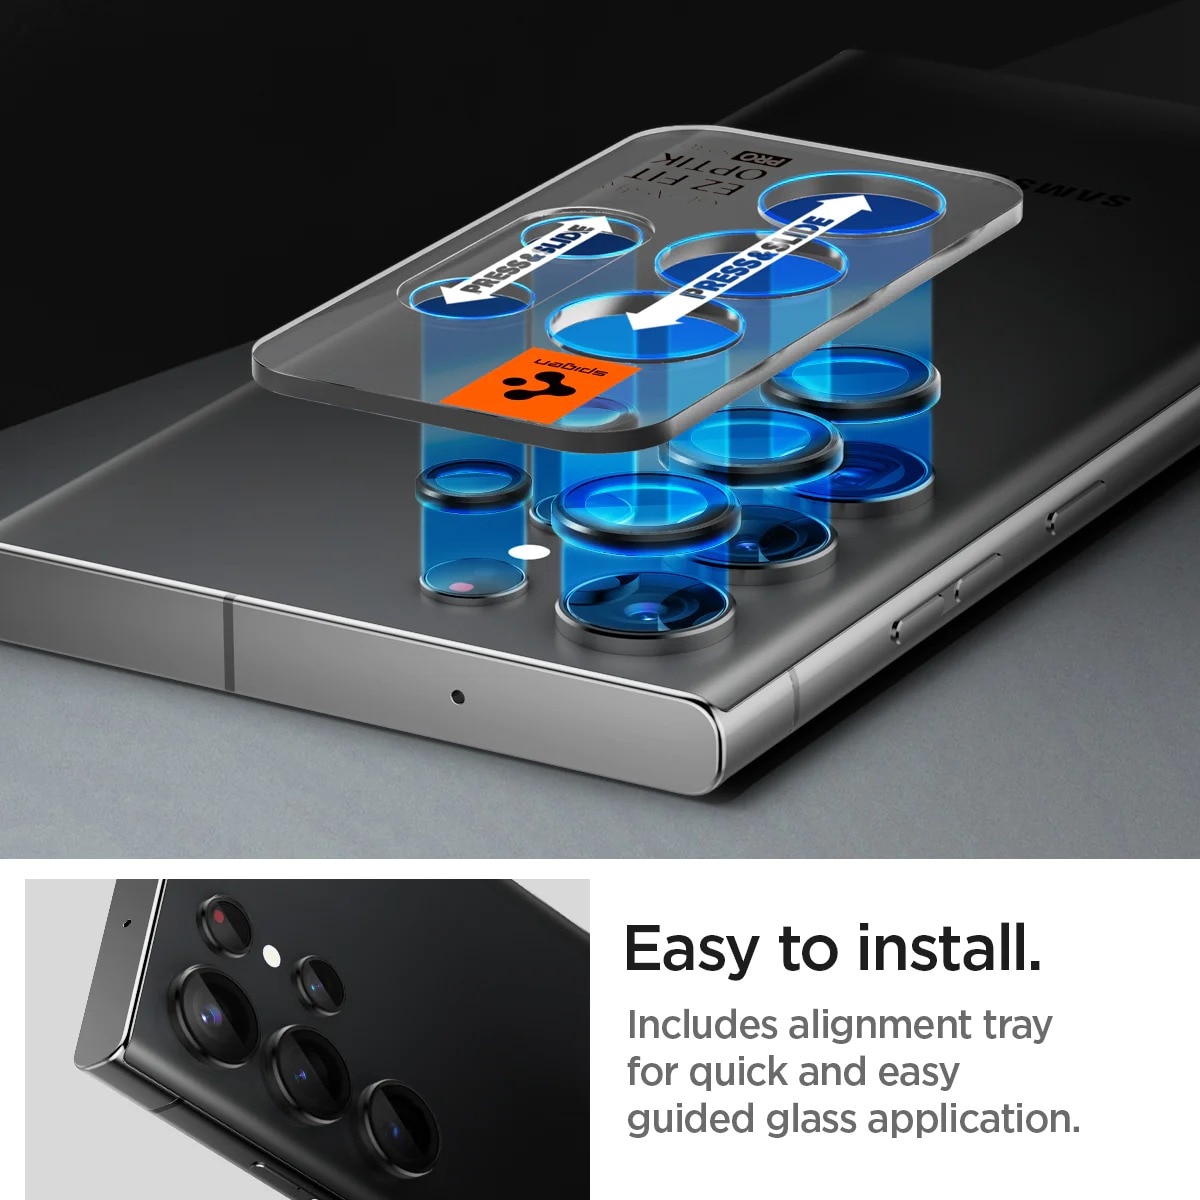 Kit para Samsung Galaxy S23 Ultra: Funda Liquid Crystal, protector de cámara y Neo Flex